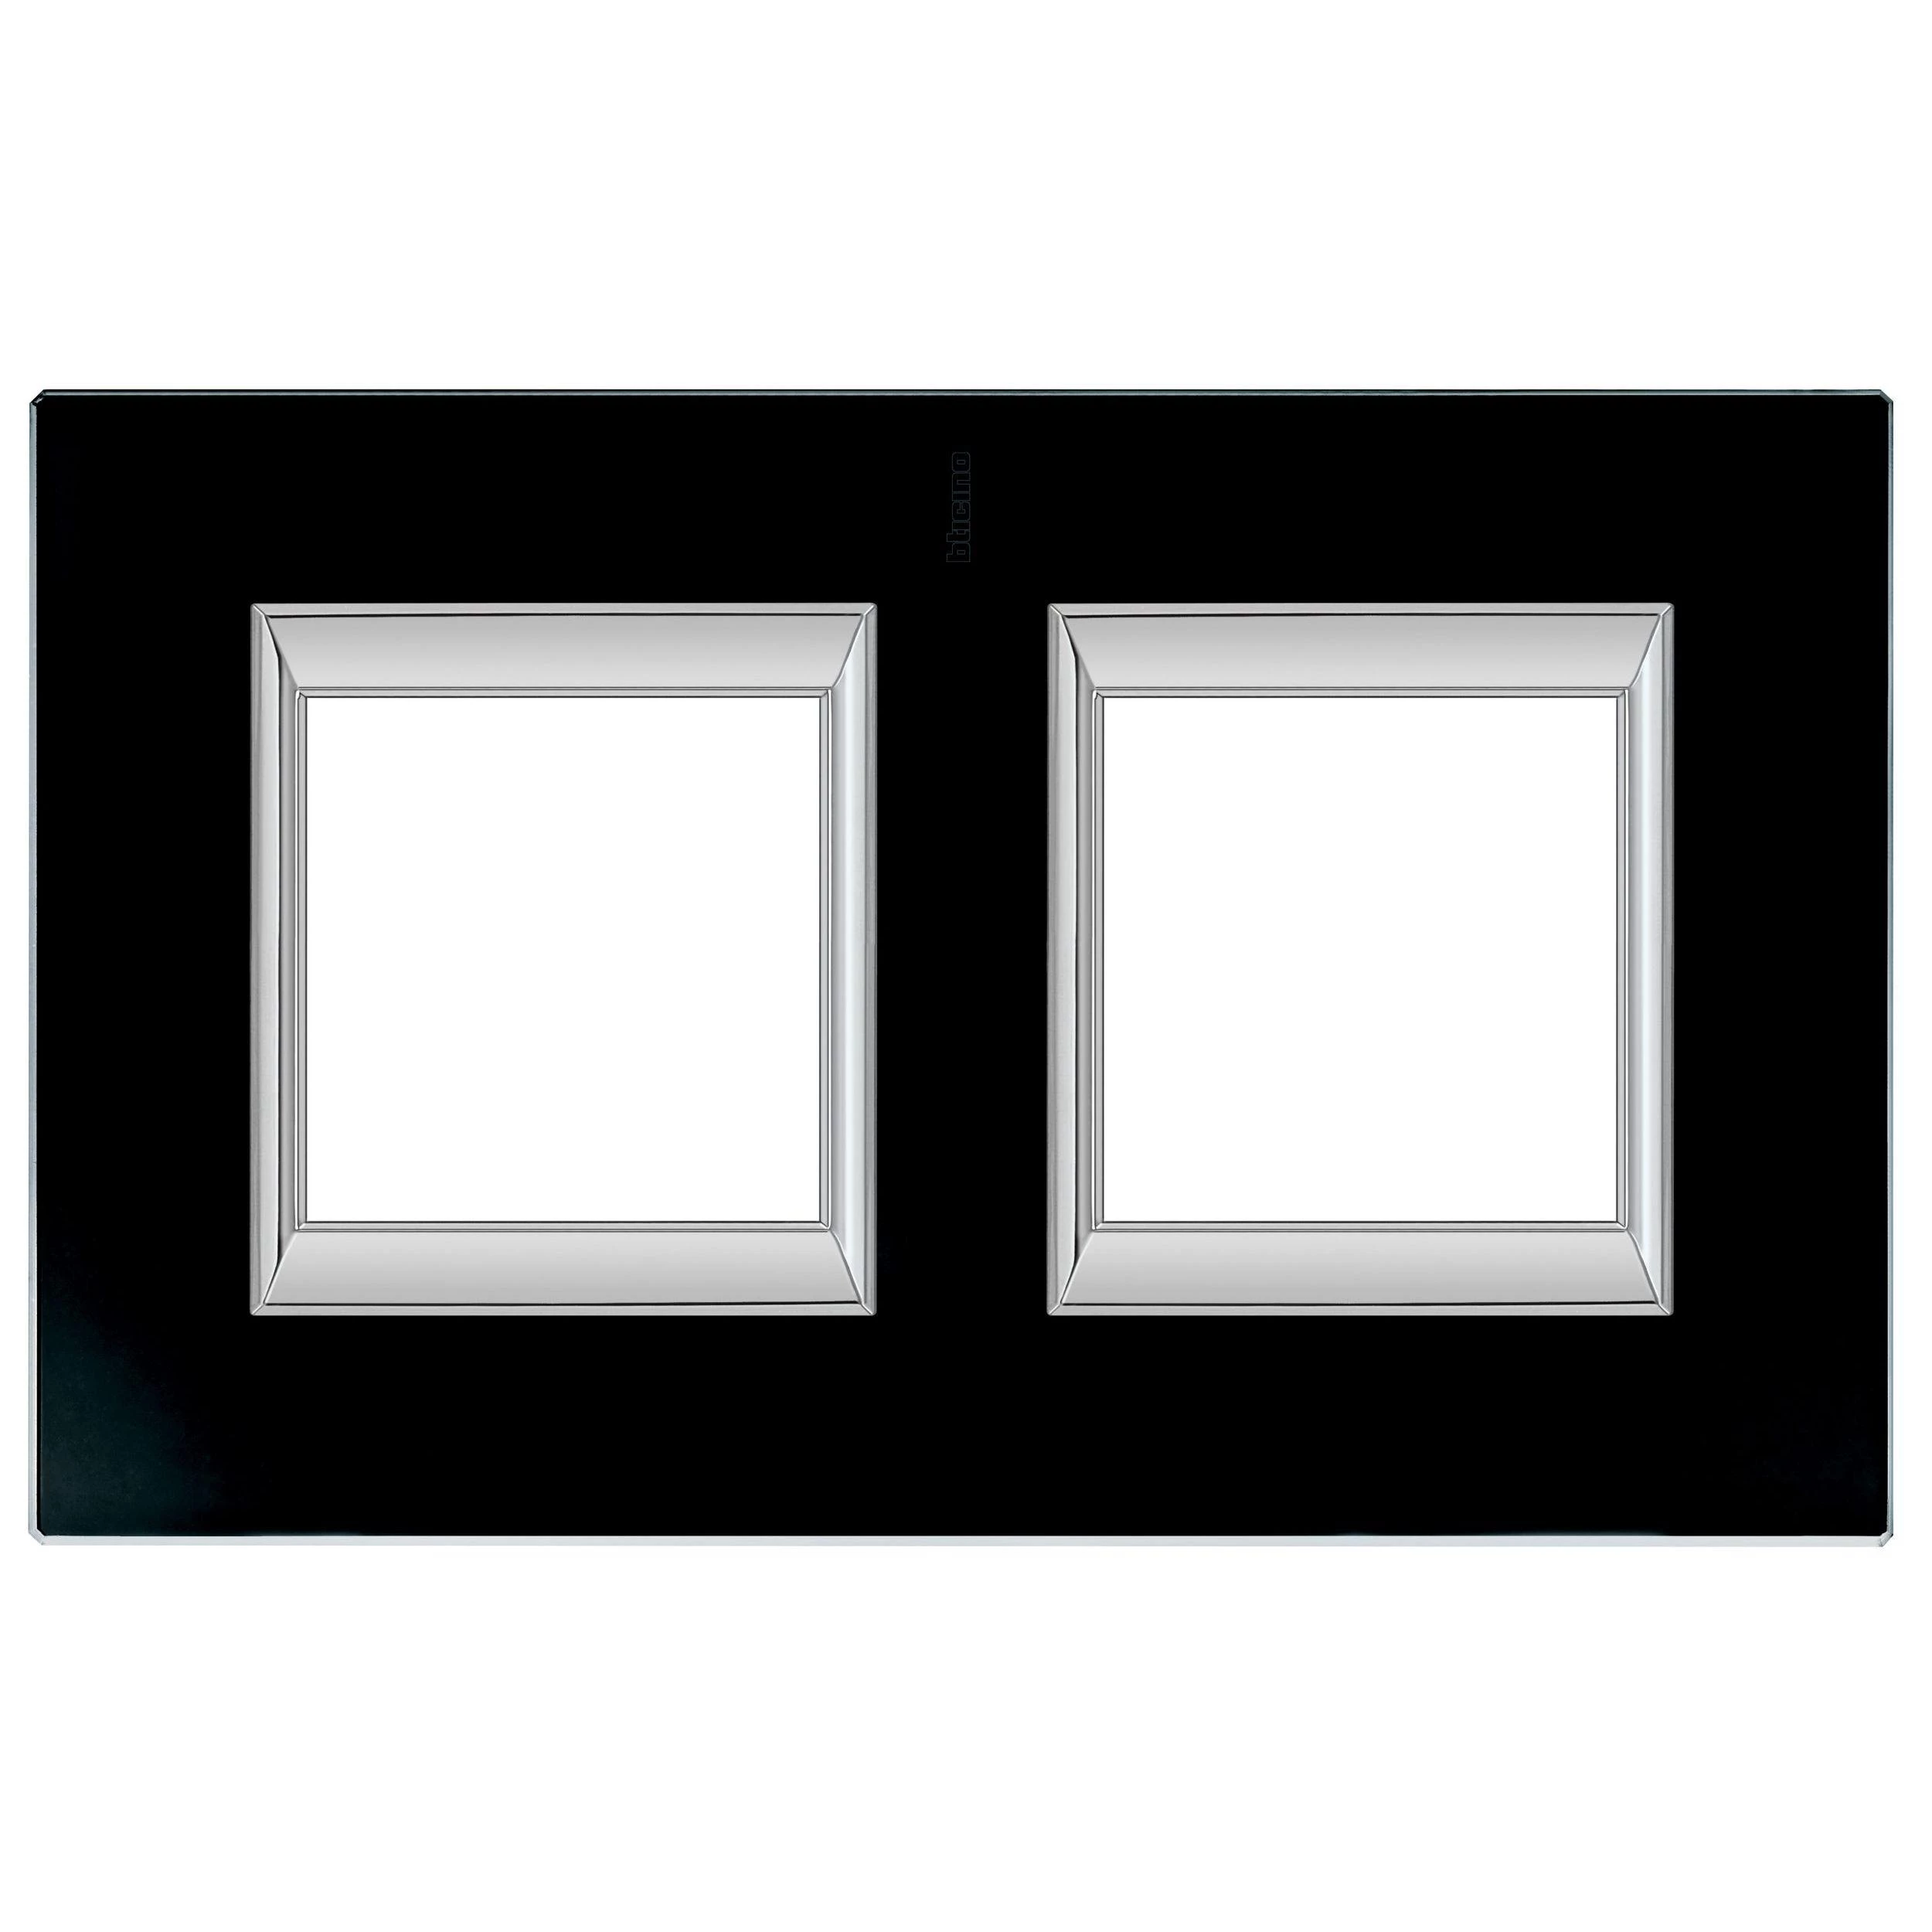  артикул HA4802/2VNN название Рамка двойная прямоугольная (вертикальная), цвет Стекло Черное, Axolute, Bticino